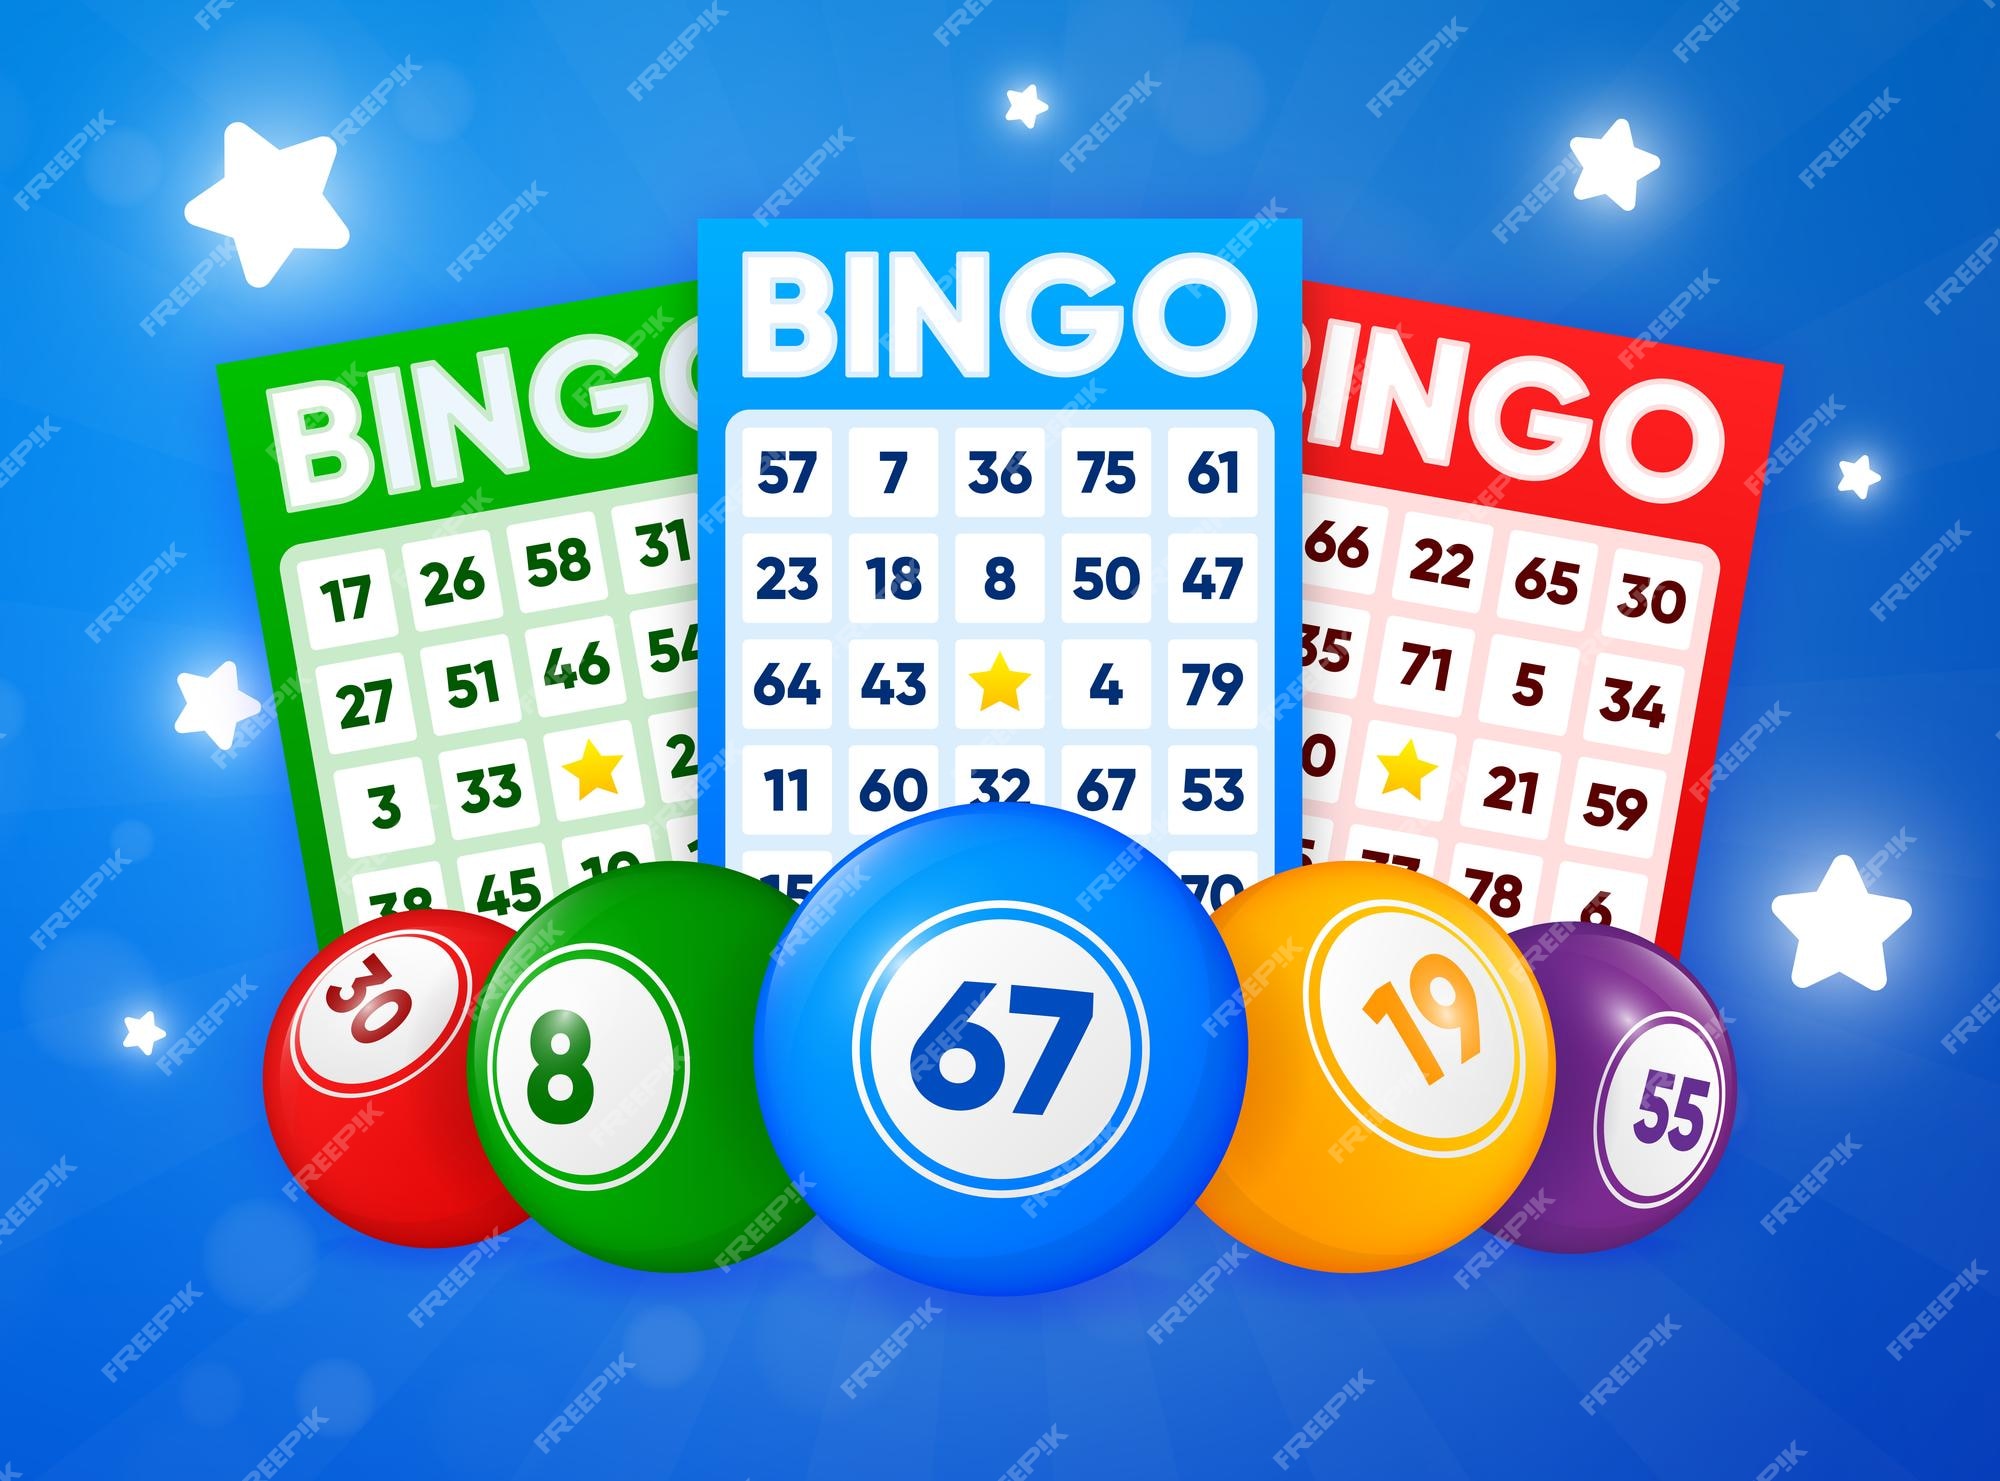 Bingo Cartas Keno - Imagens grátis no Pixabay - Pixabay